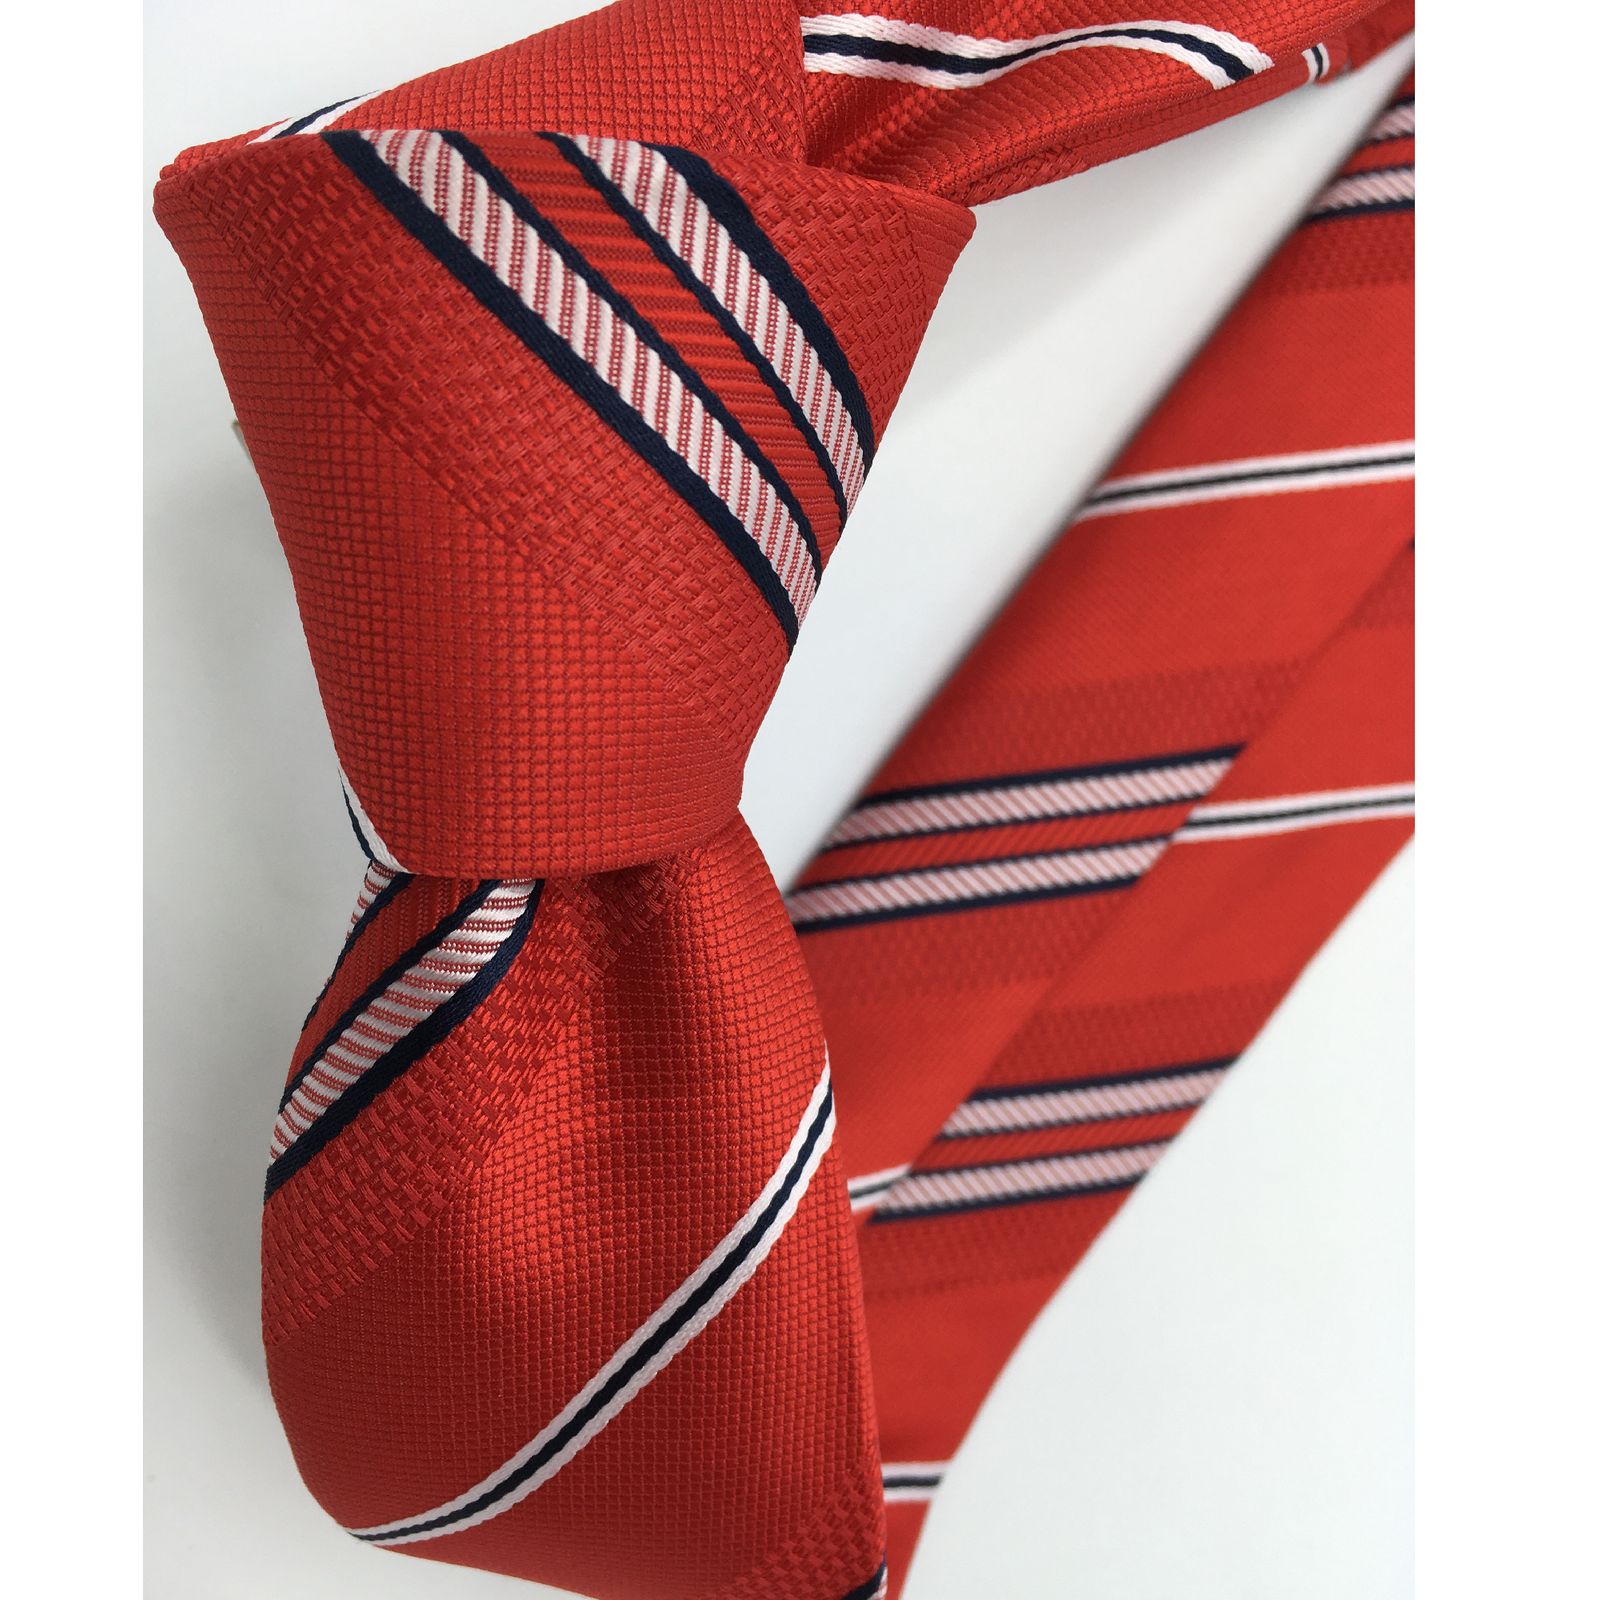  ست کراوات و دستمال جیب مردانه هکس ایران مدل KT-MD03 -  - 5